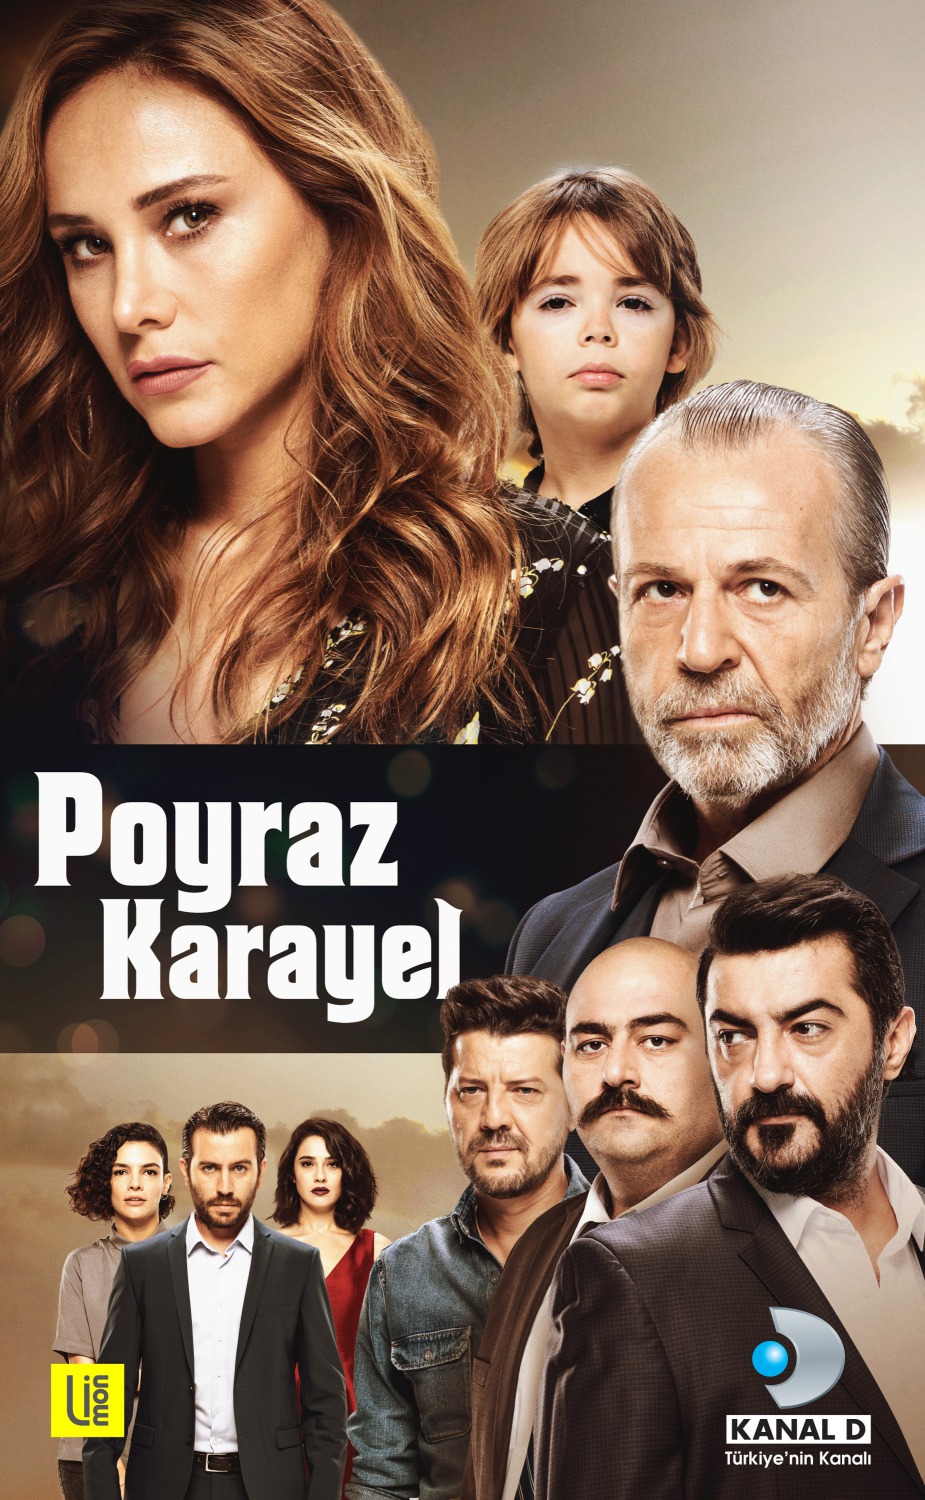 Extra Large TV Poster Image for Poyraz Karayel (#2 of 3)